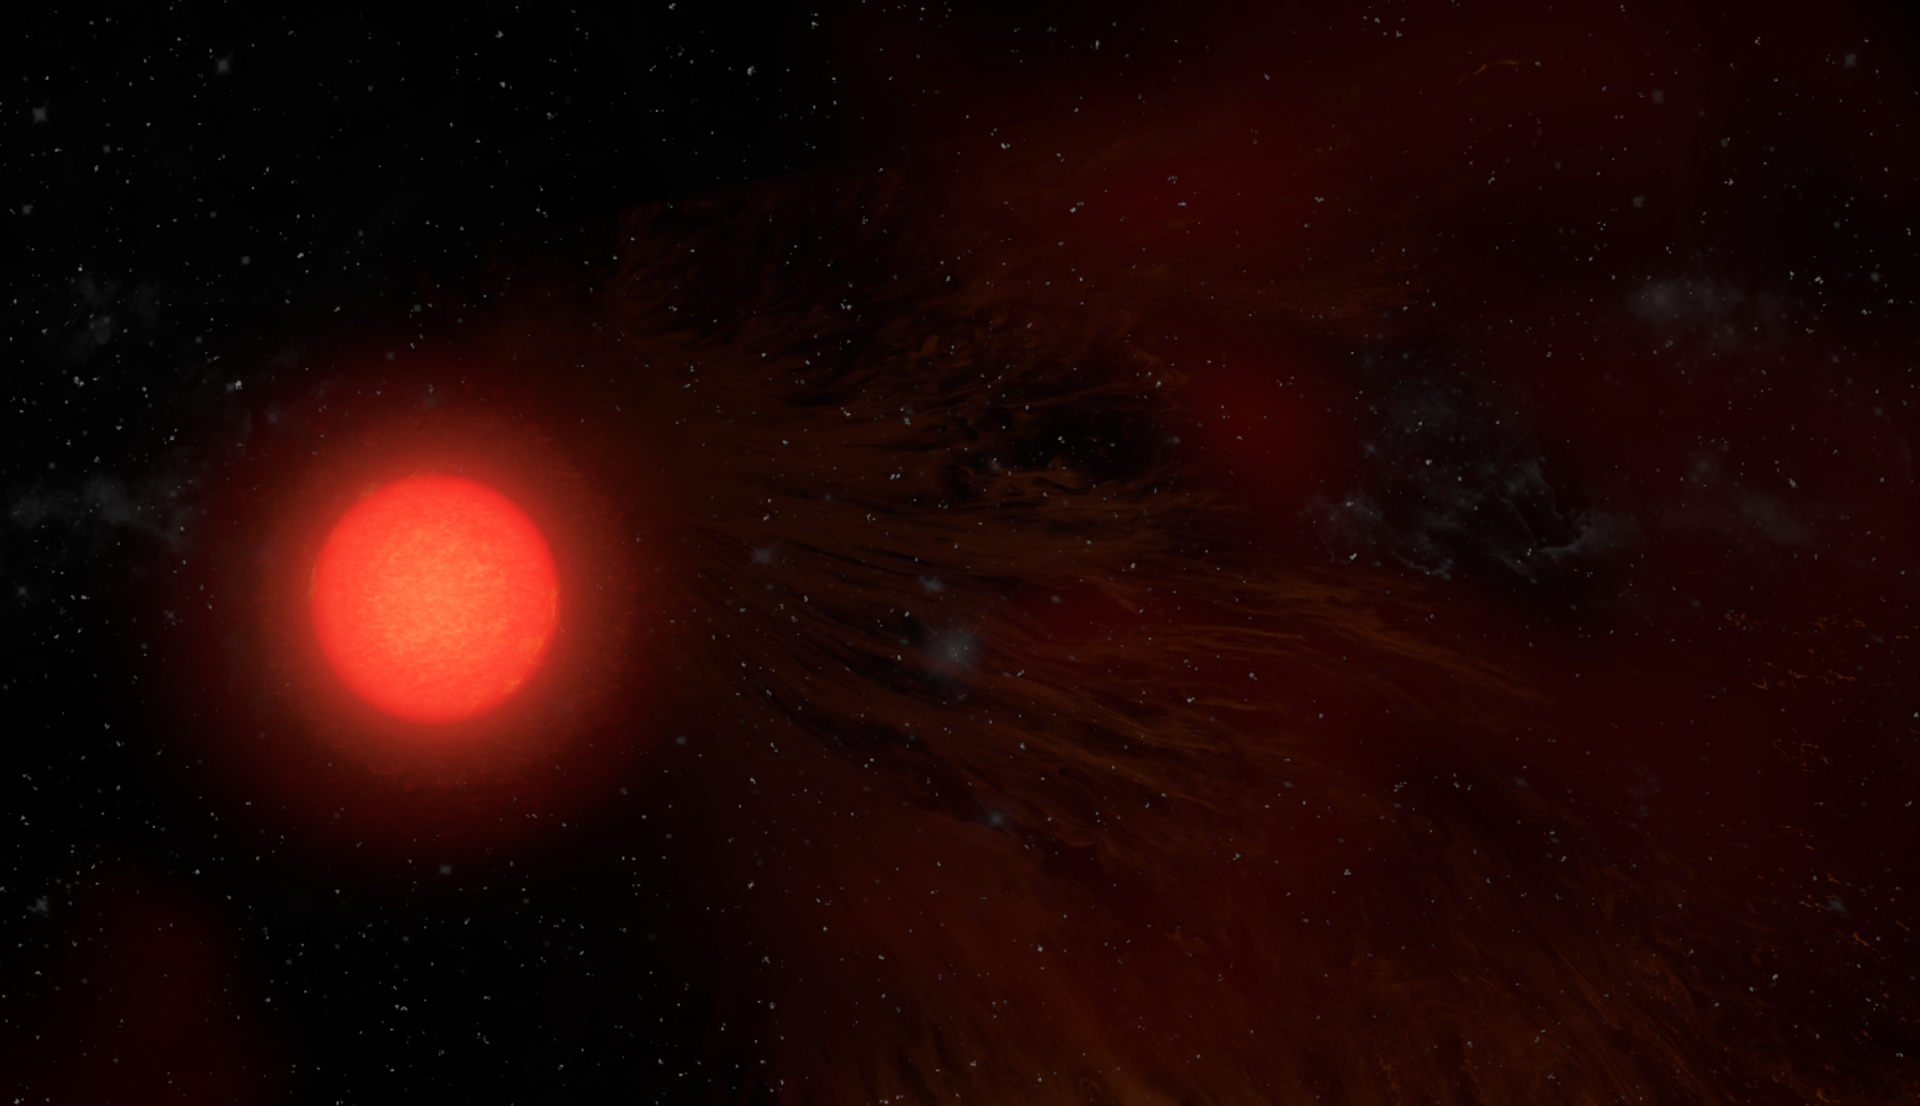 Representación artística de la supergigante roja Antares. Crédito: NRAO/AUI/NSF, S. Dagnello